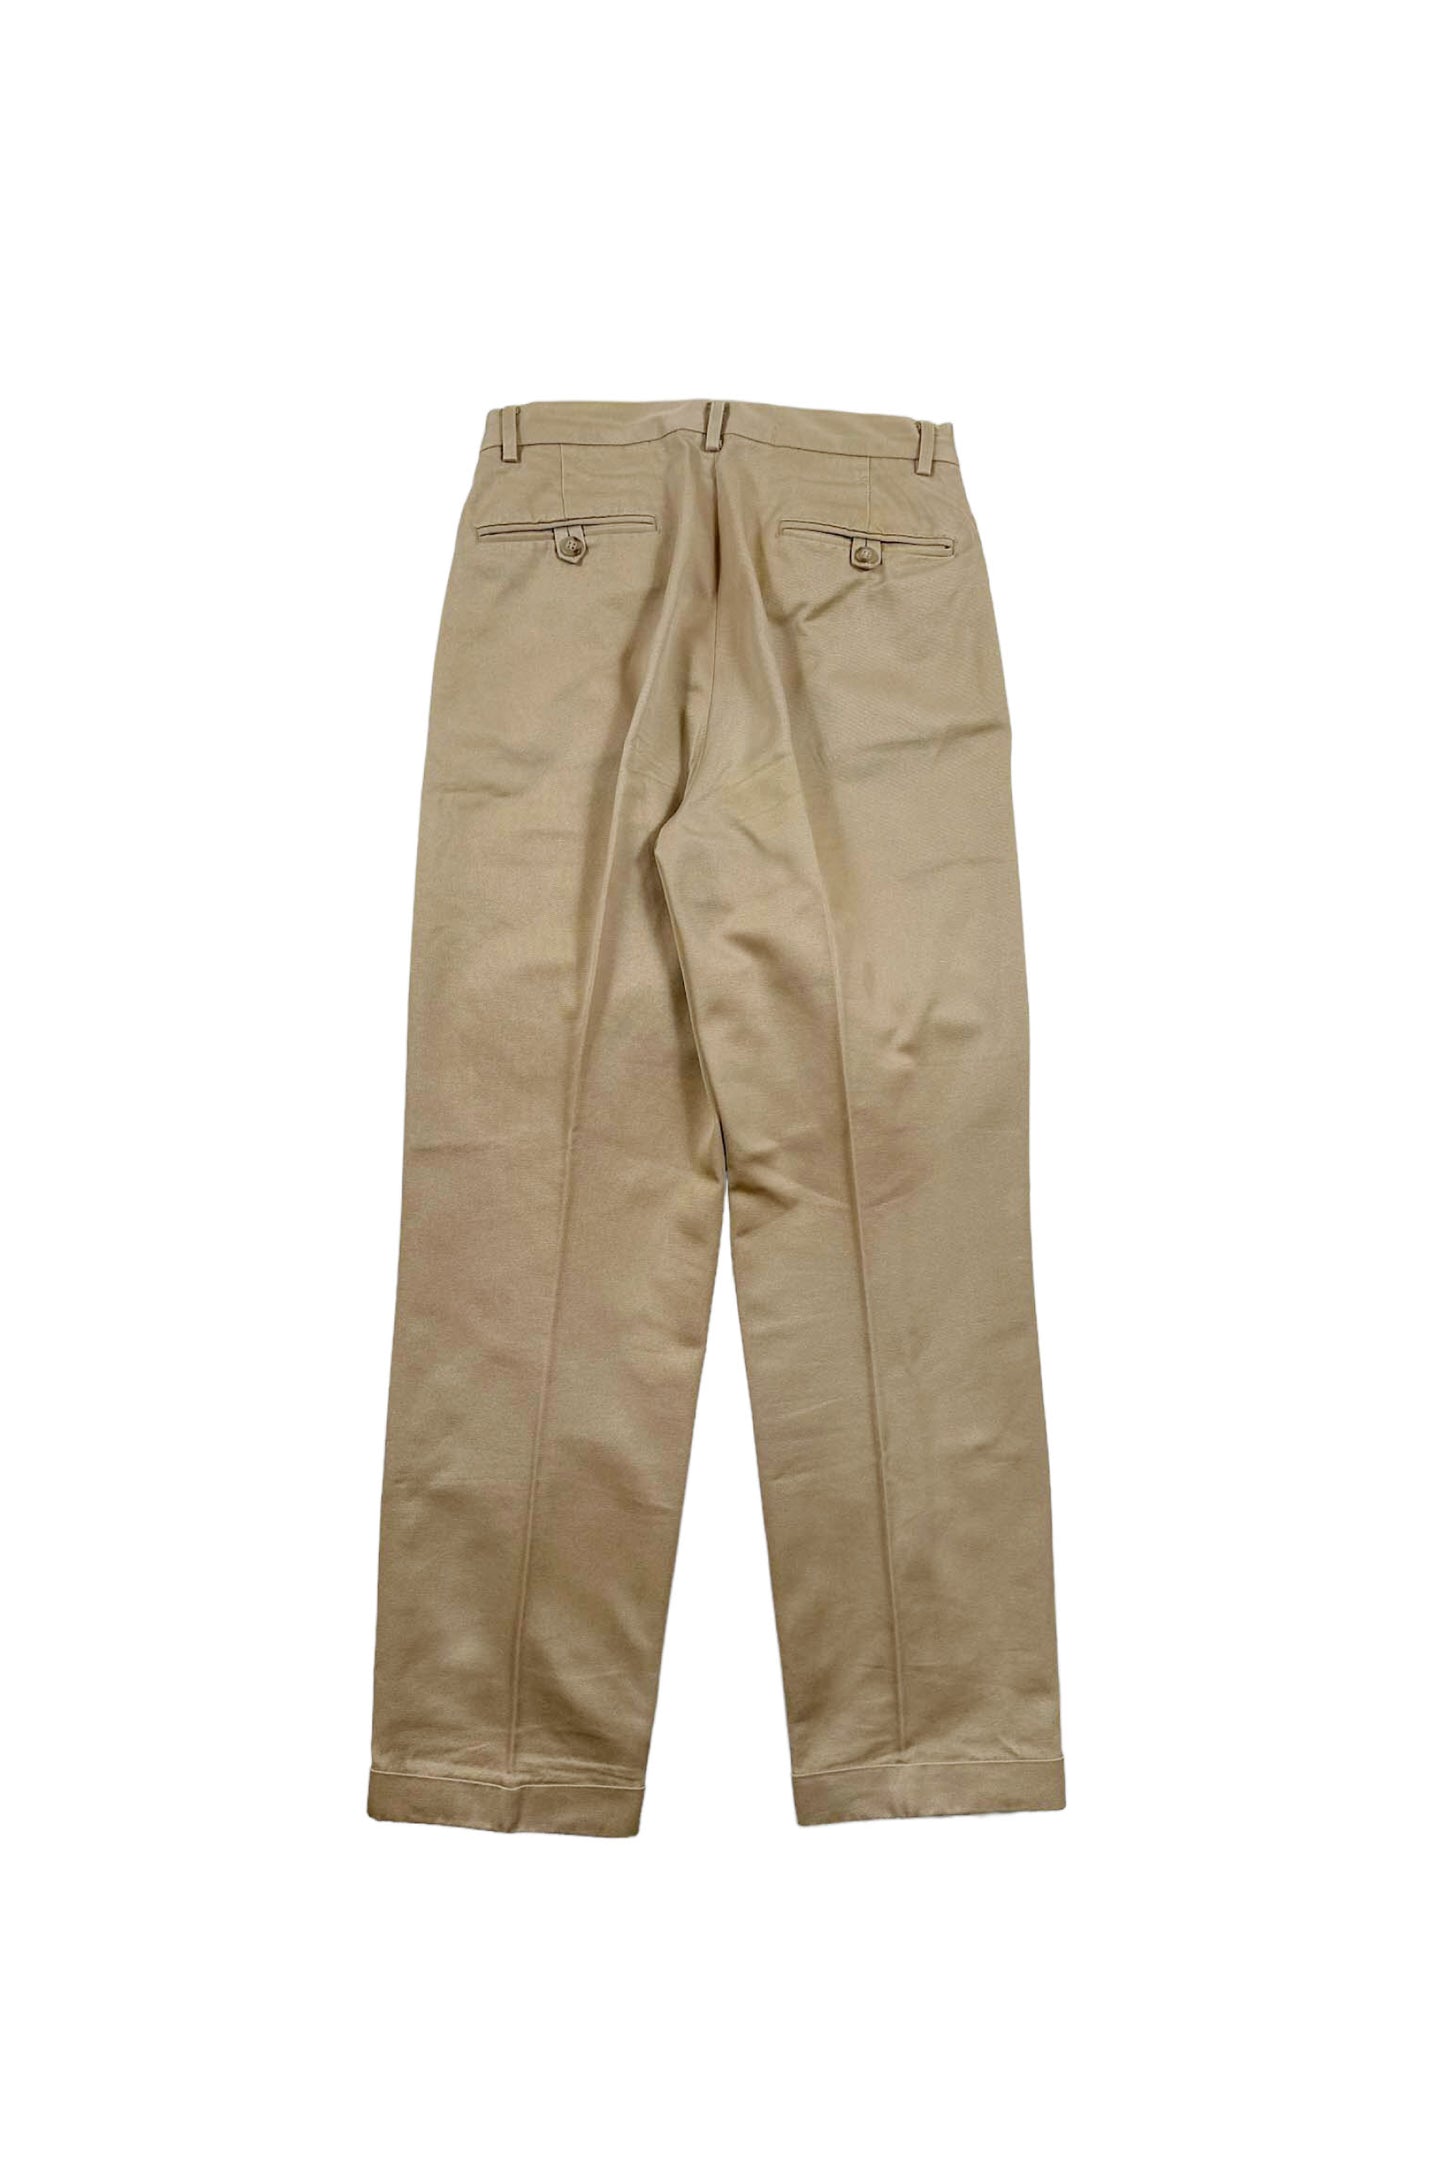 90's Polo by Ralph Lauren beige cotton pants